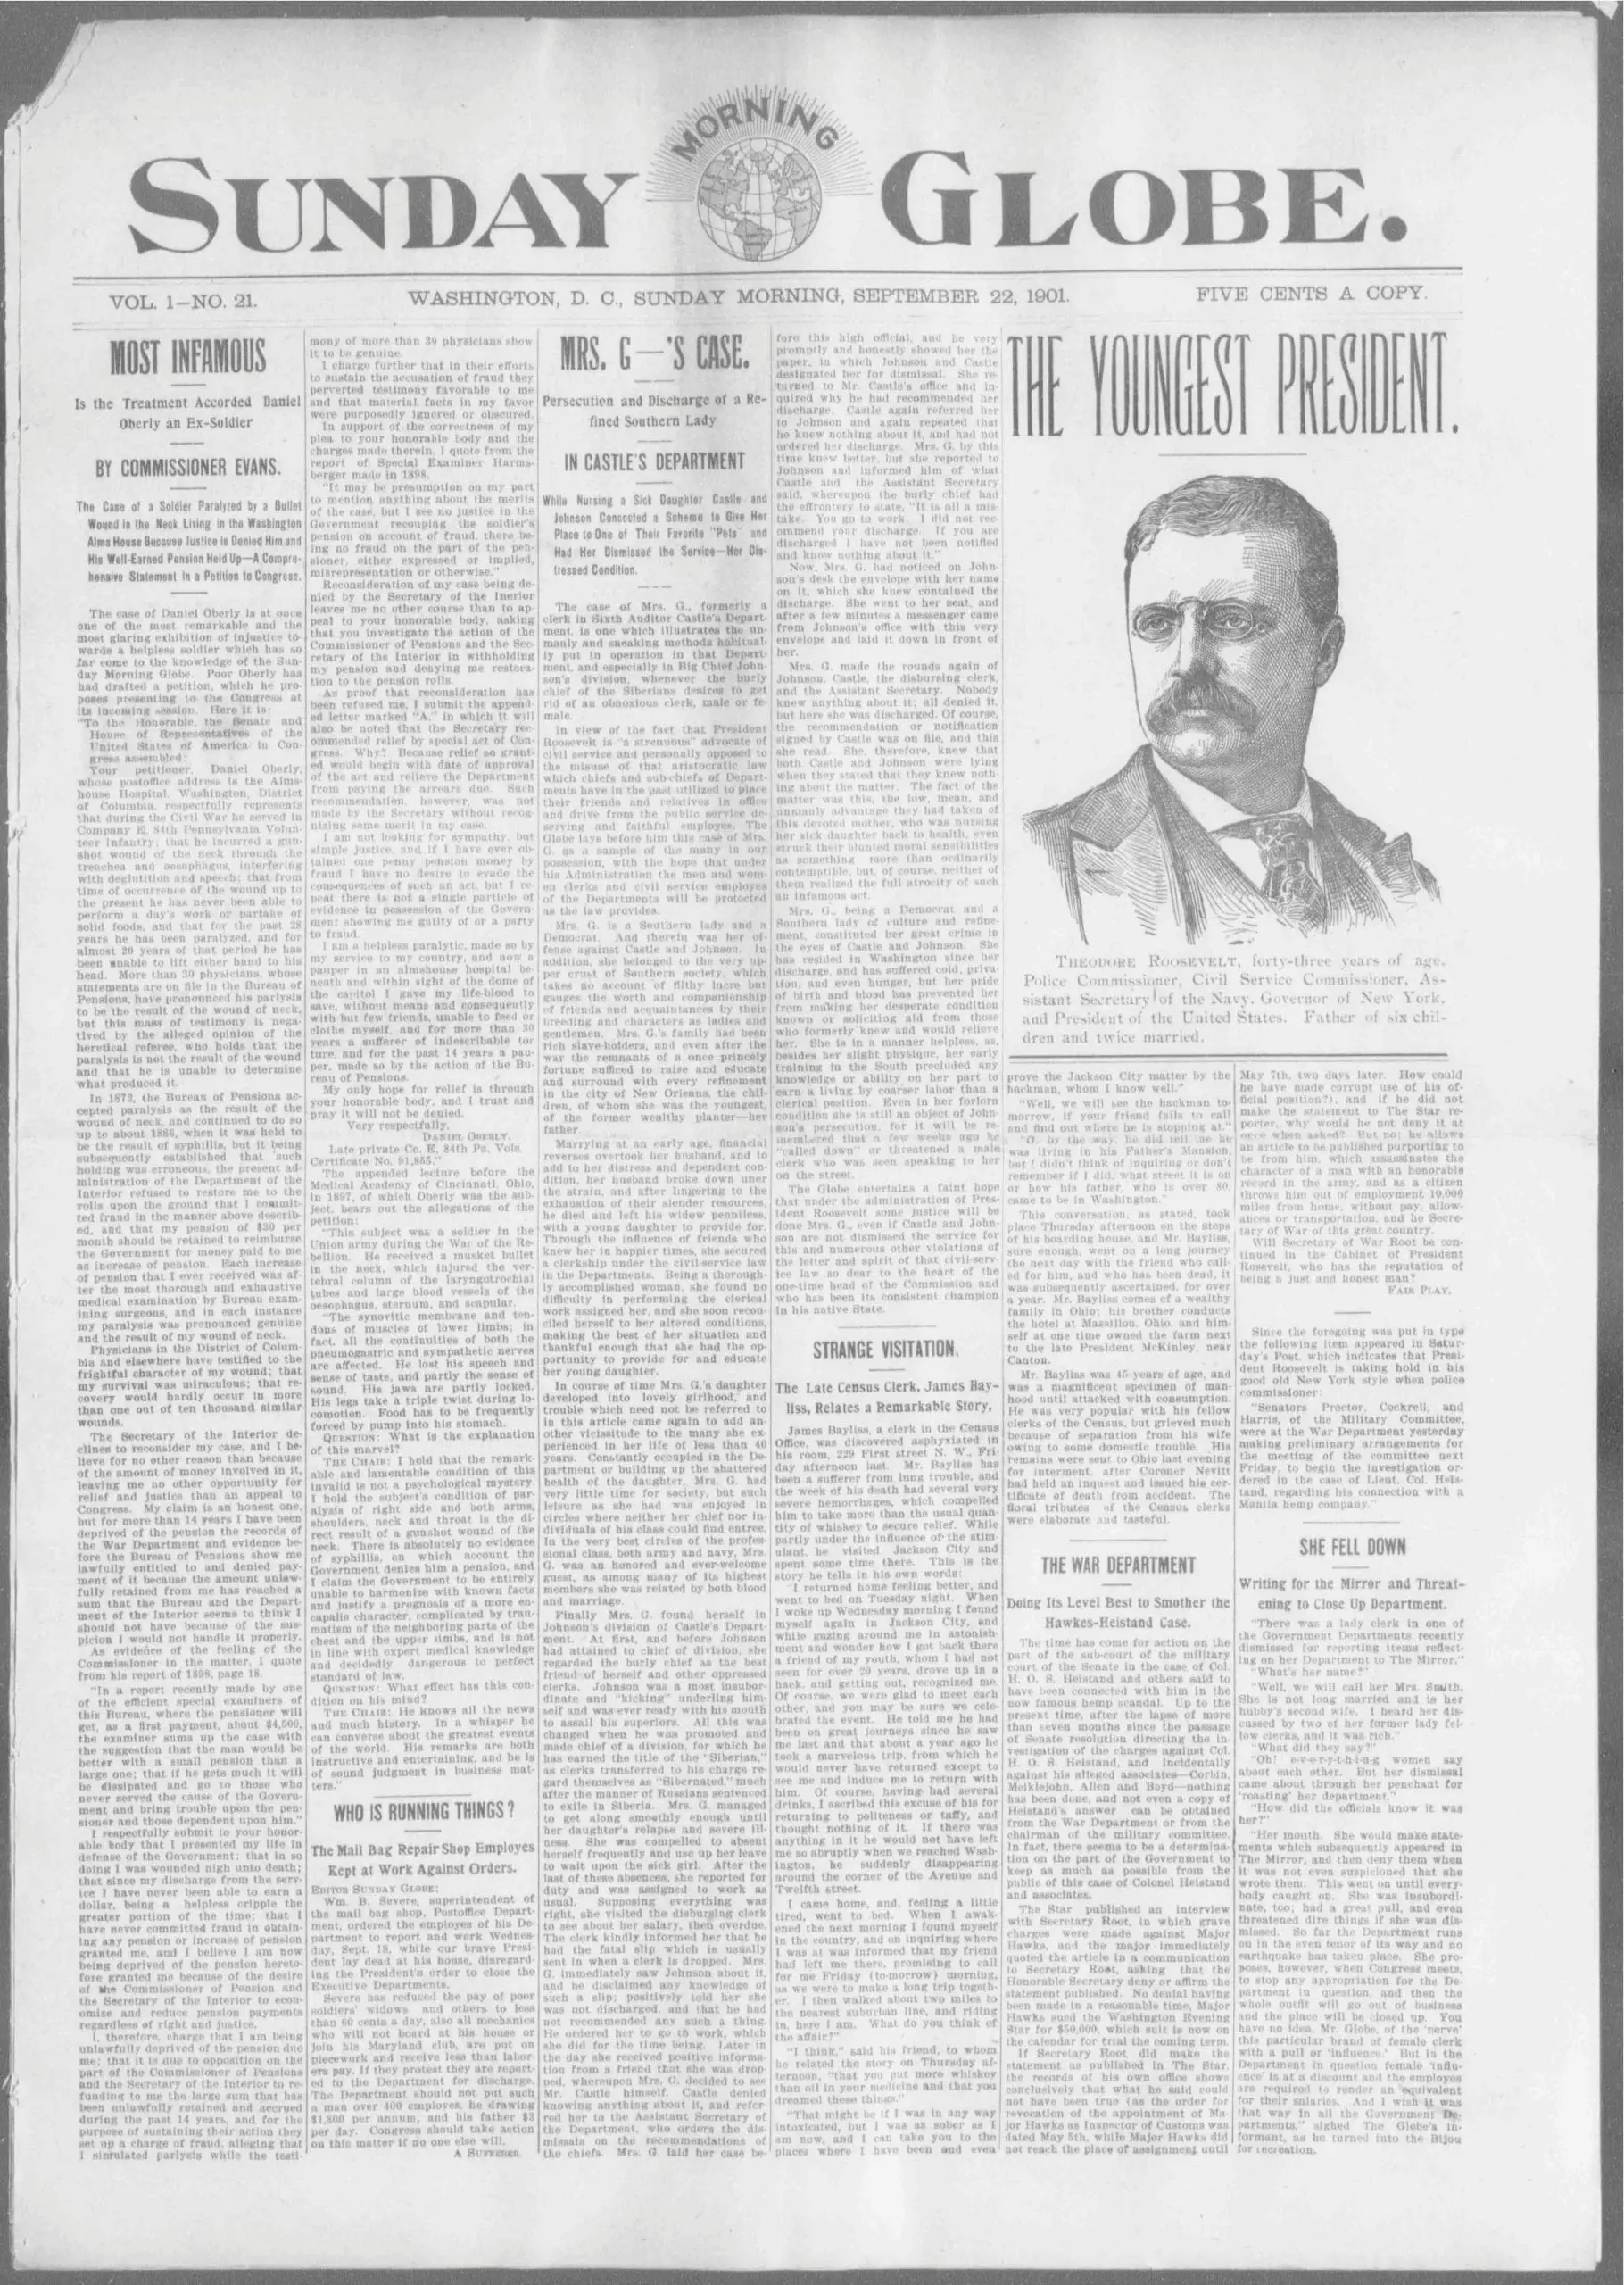 Sunday Morning Globe - September 22nd, 1901